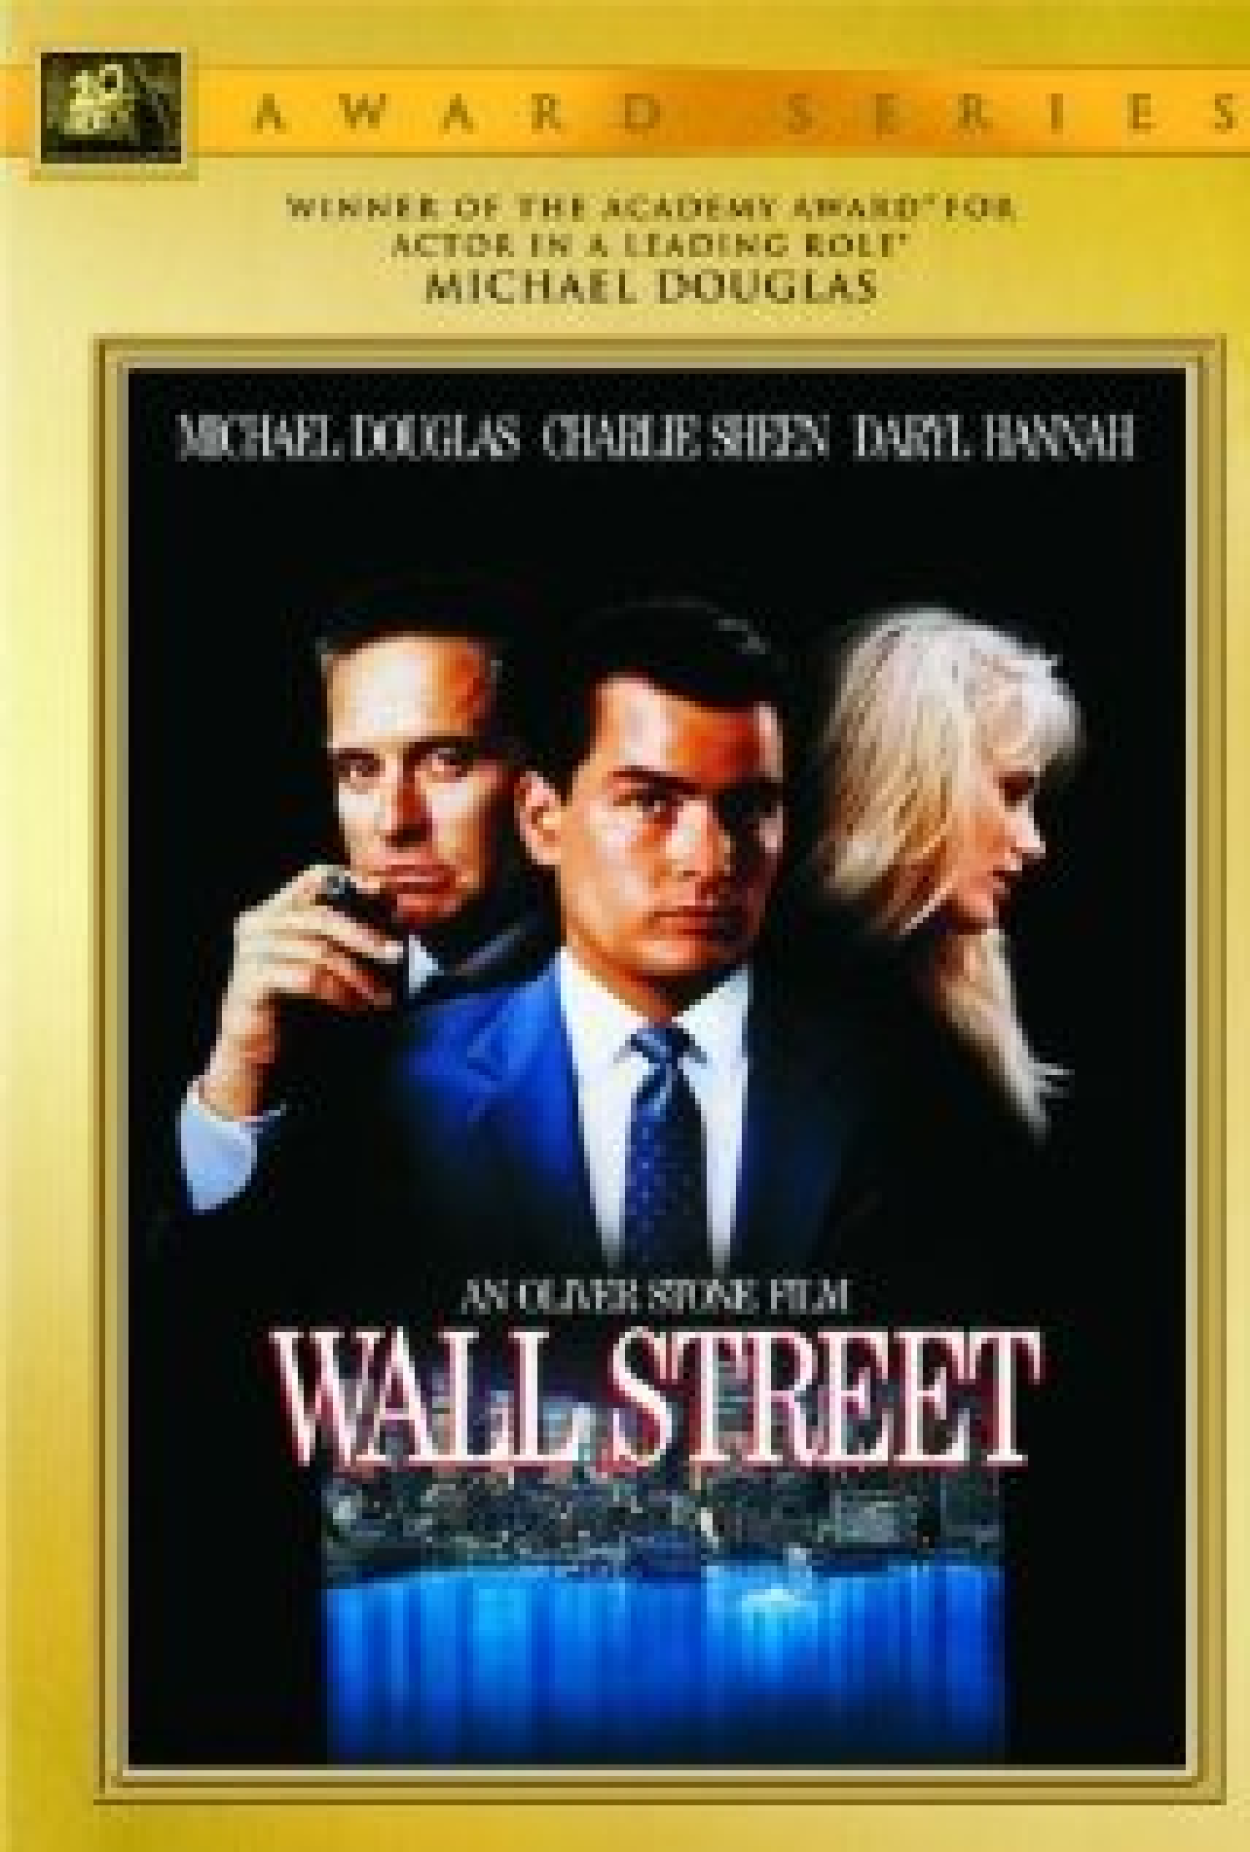 O Lobo de Wall Street - Filme 2013 - AdoroCinema